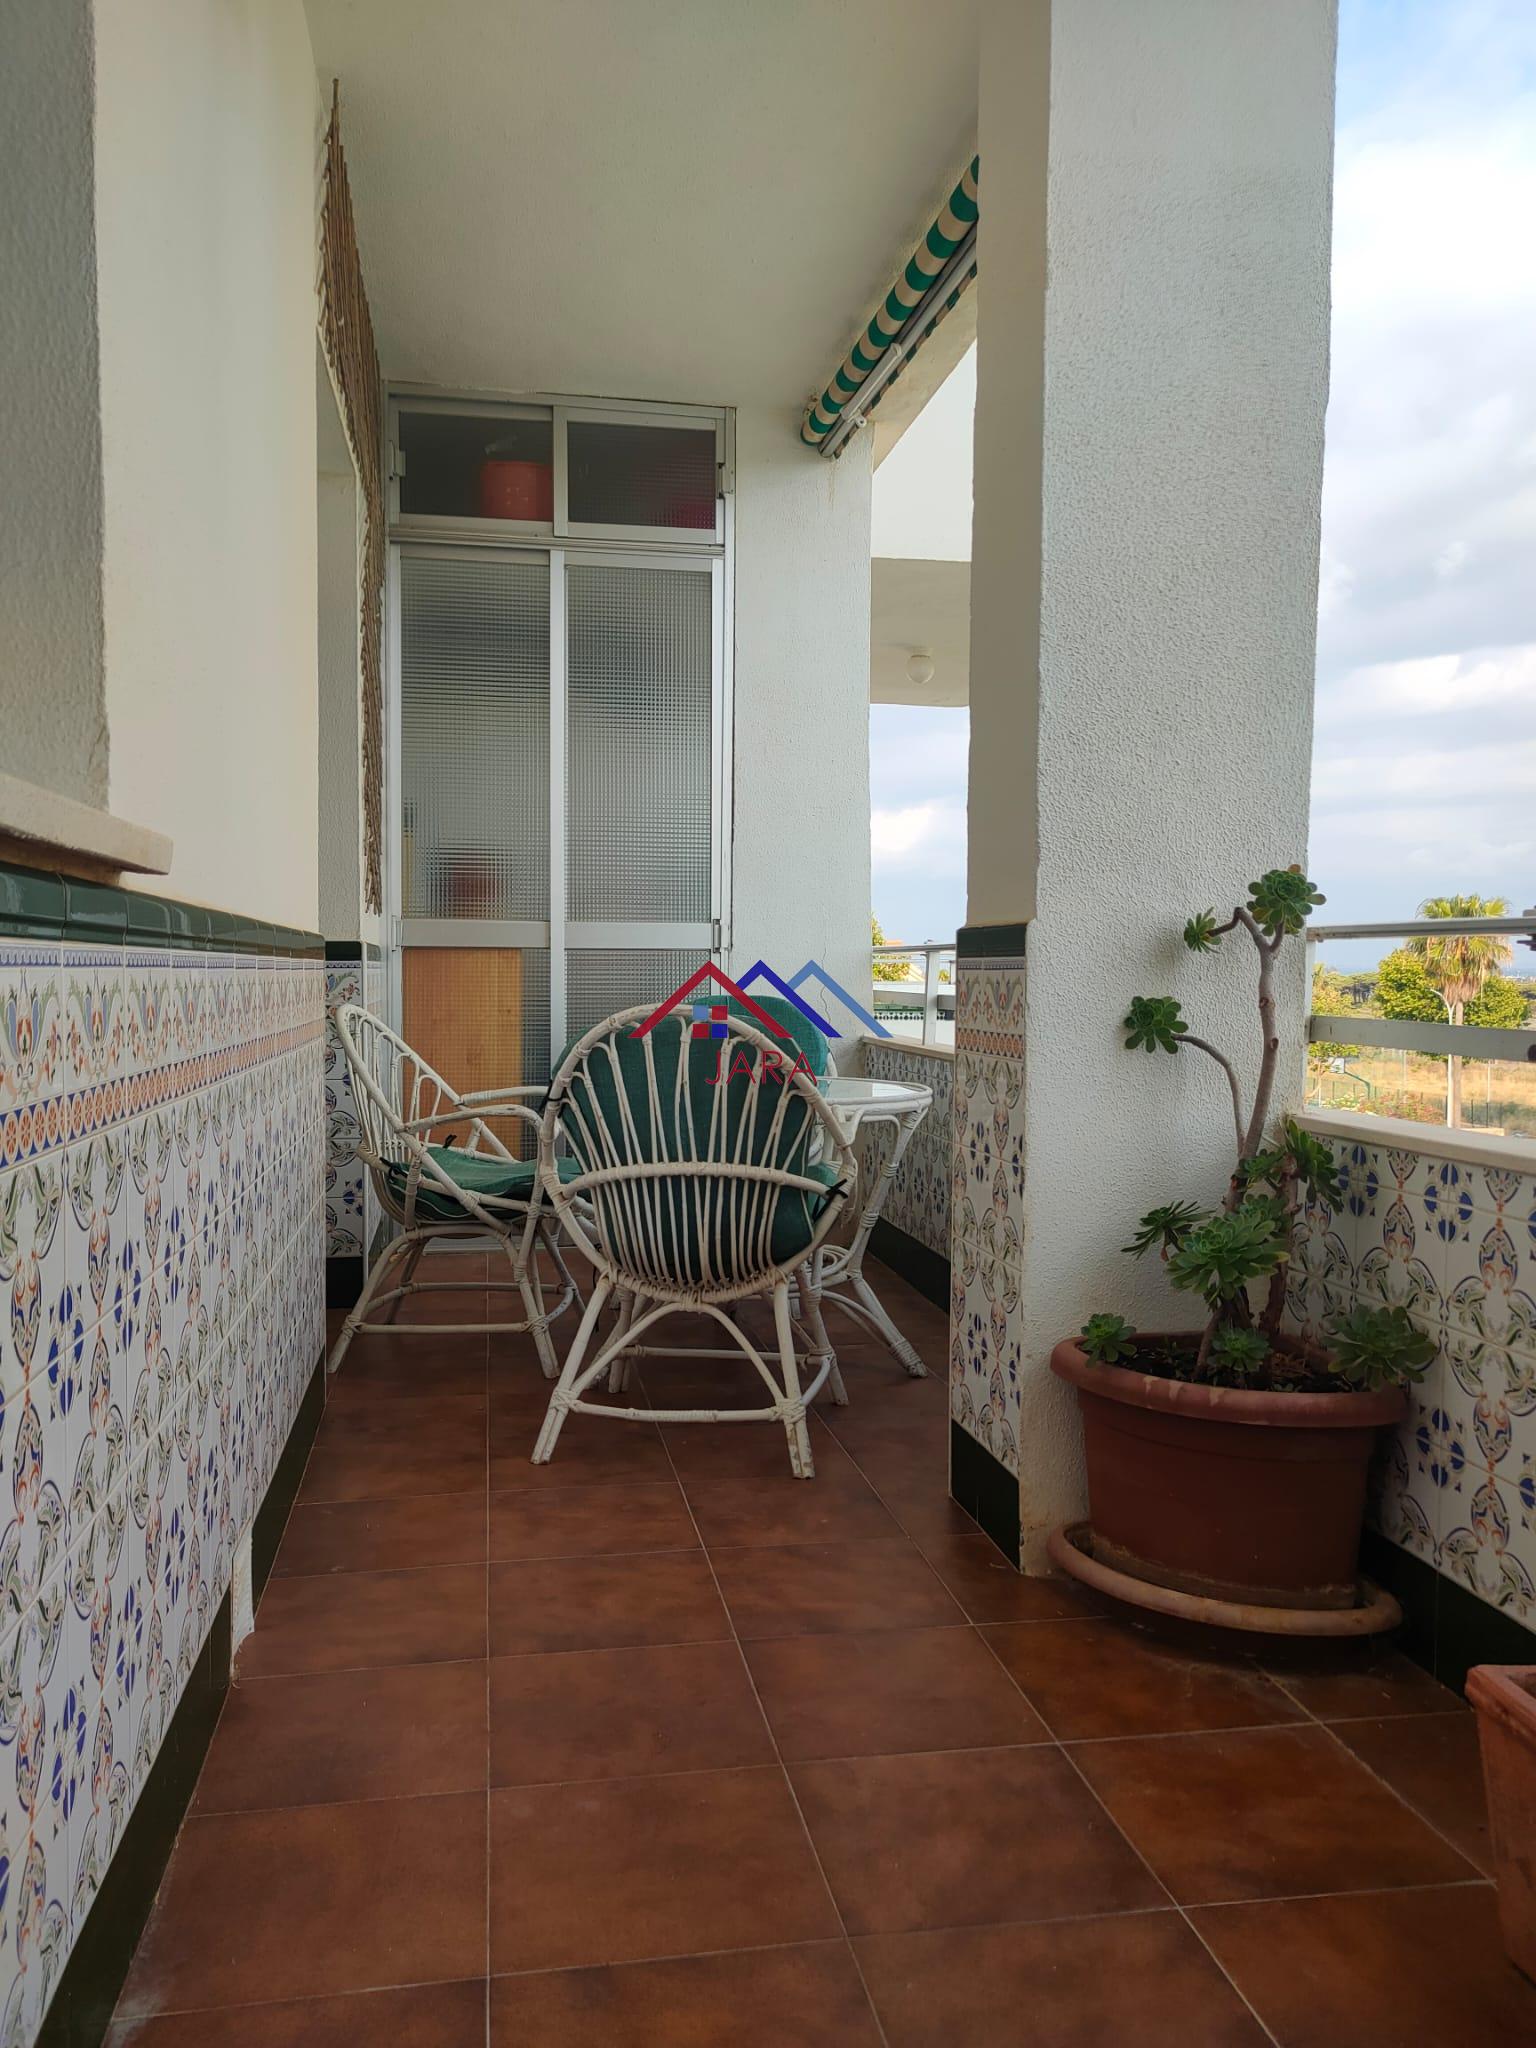 Miete von appartement in
 El Puerto de Santa María